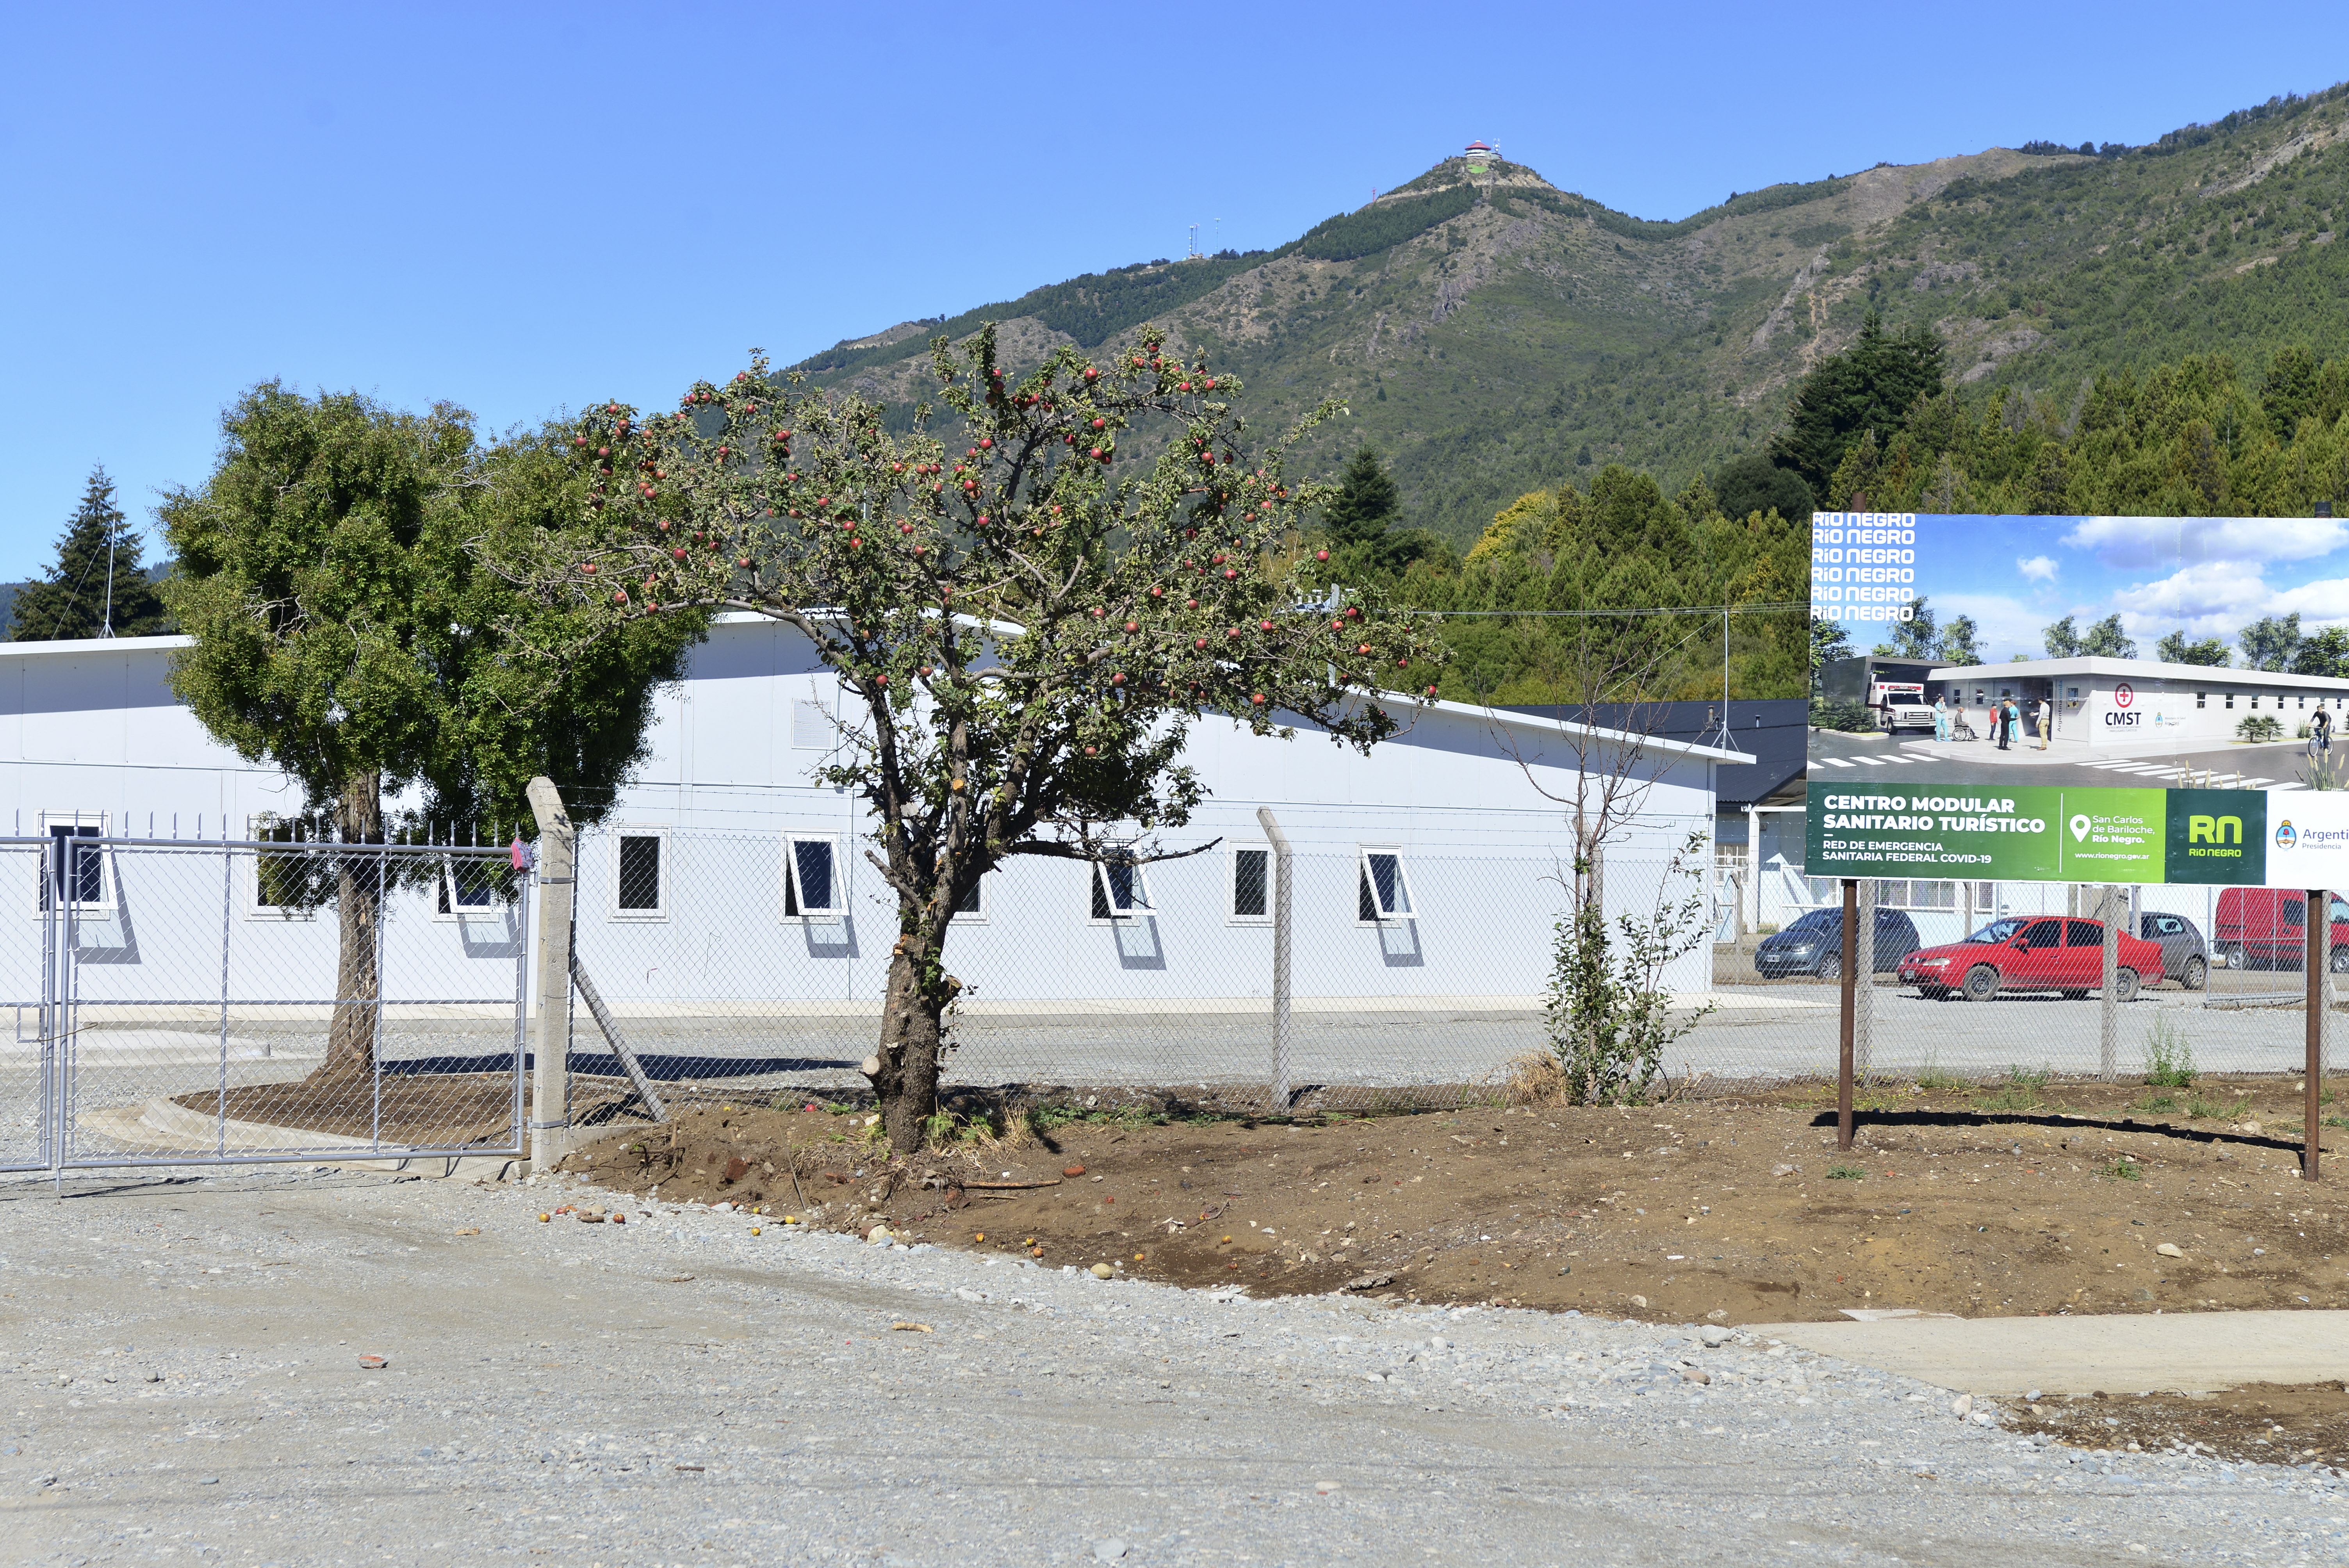 La estructura edilicia está lista en Bariloche, pero el equipamiento aún no llegó. Replantean su utilización. Foto: archivo